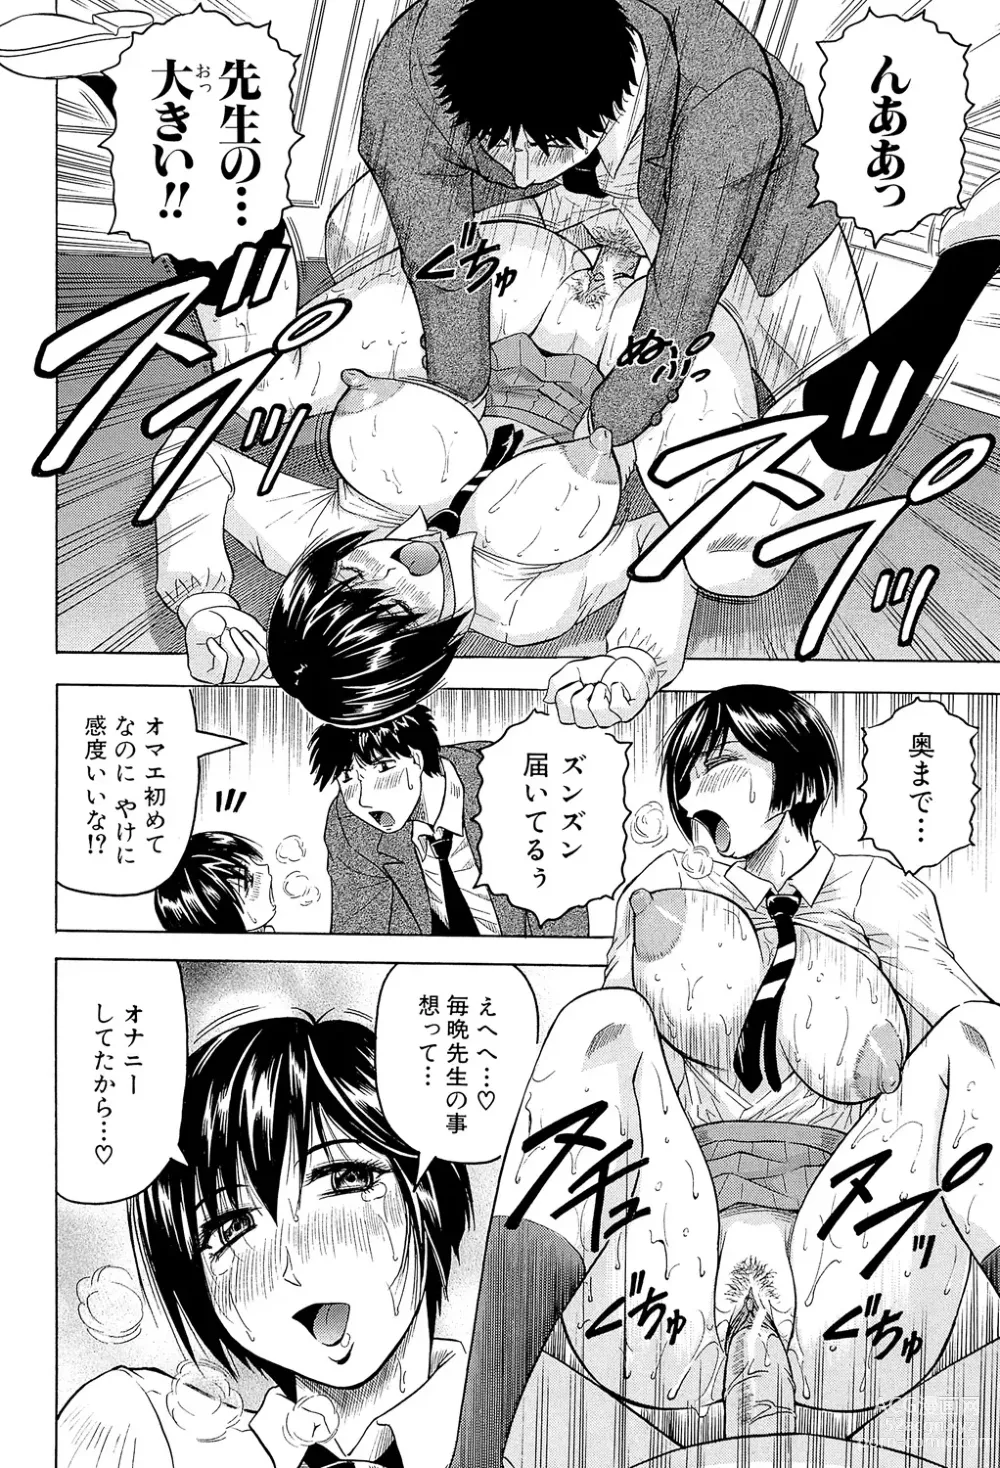 Page 198 of manga Mesu Jokukan no Miboujin